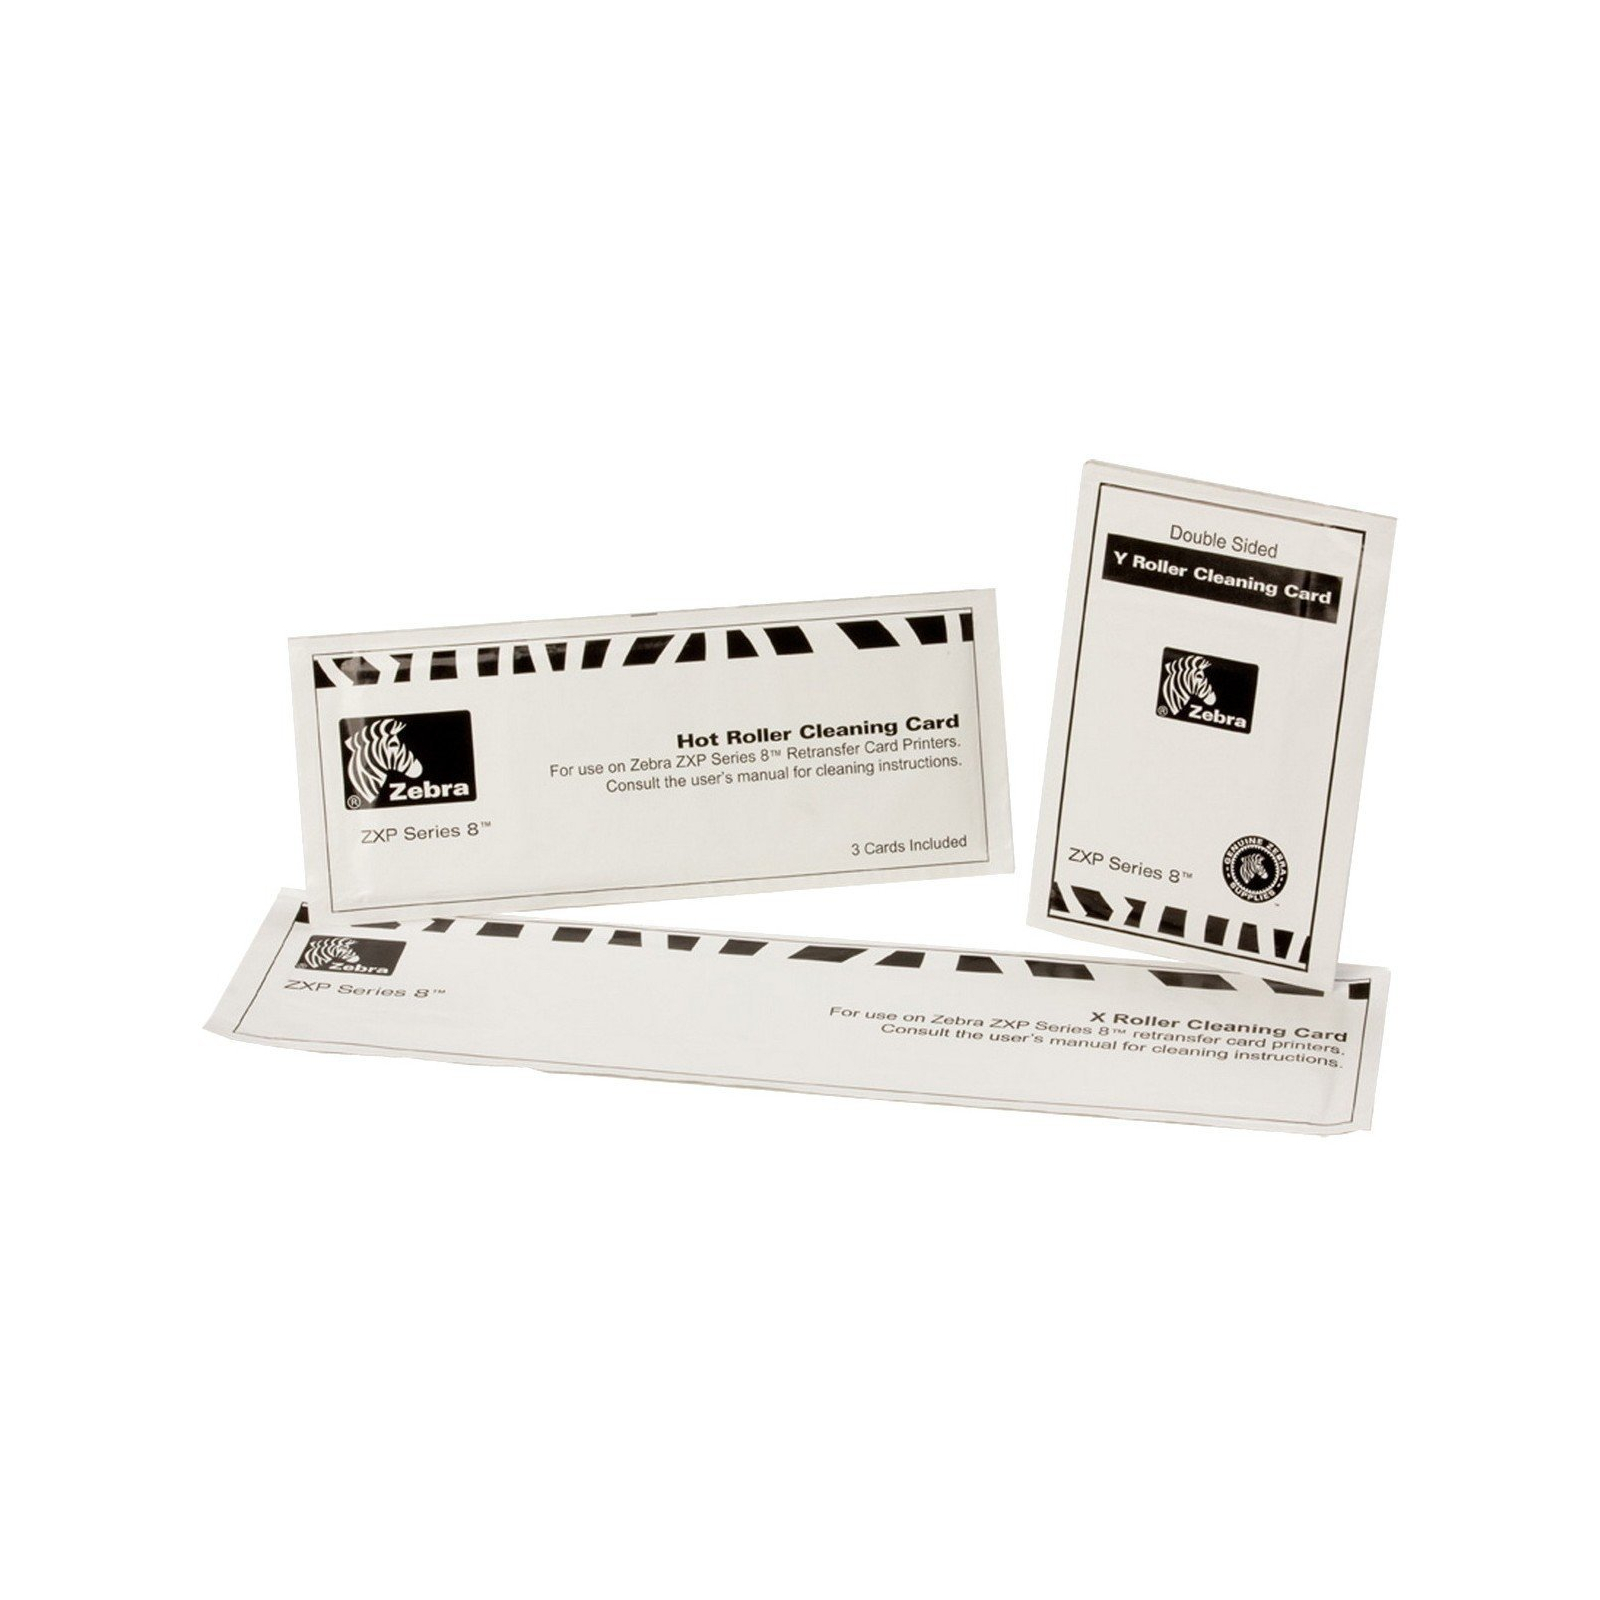 Комплект чистящих карт Zebra 12 - X и Y карт, ролик очищення / и 3-карты горячего очищени (105999-801)